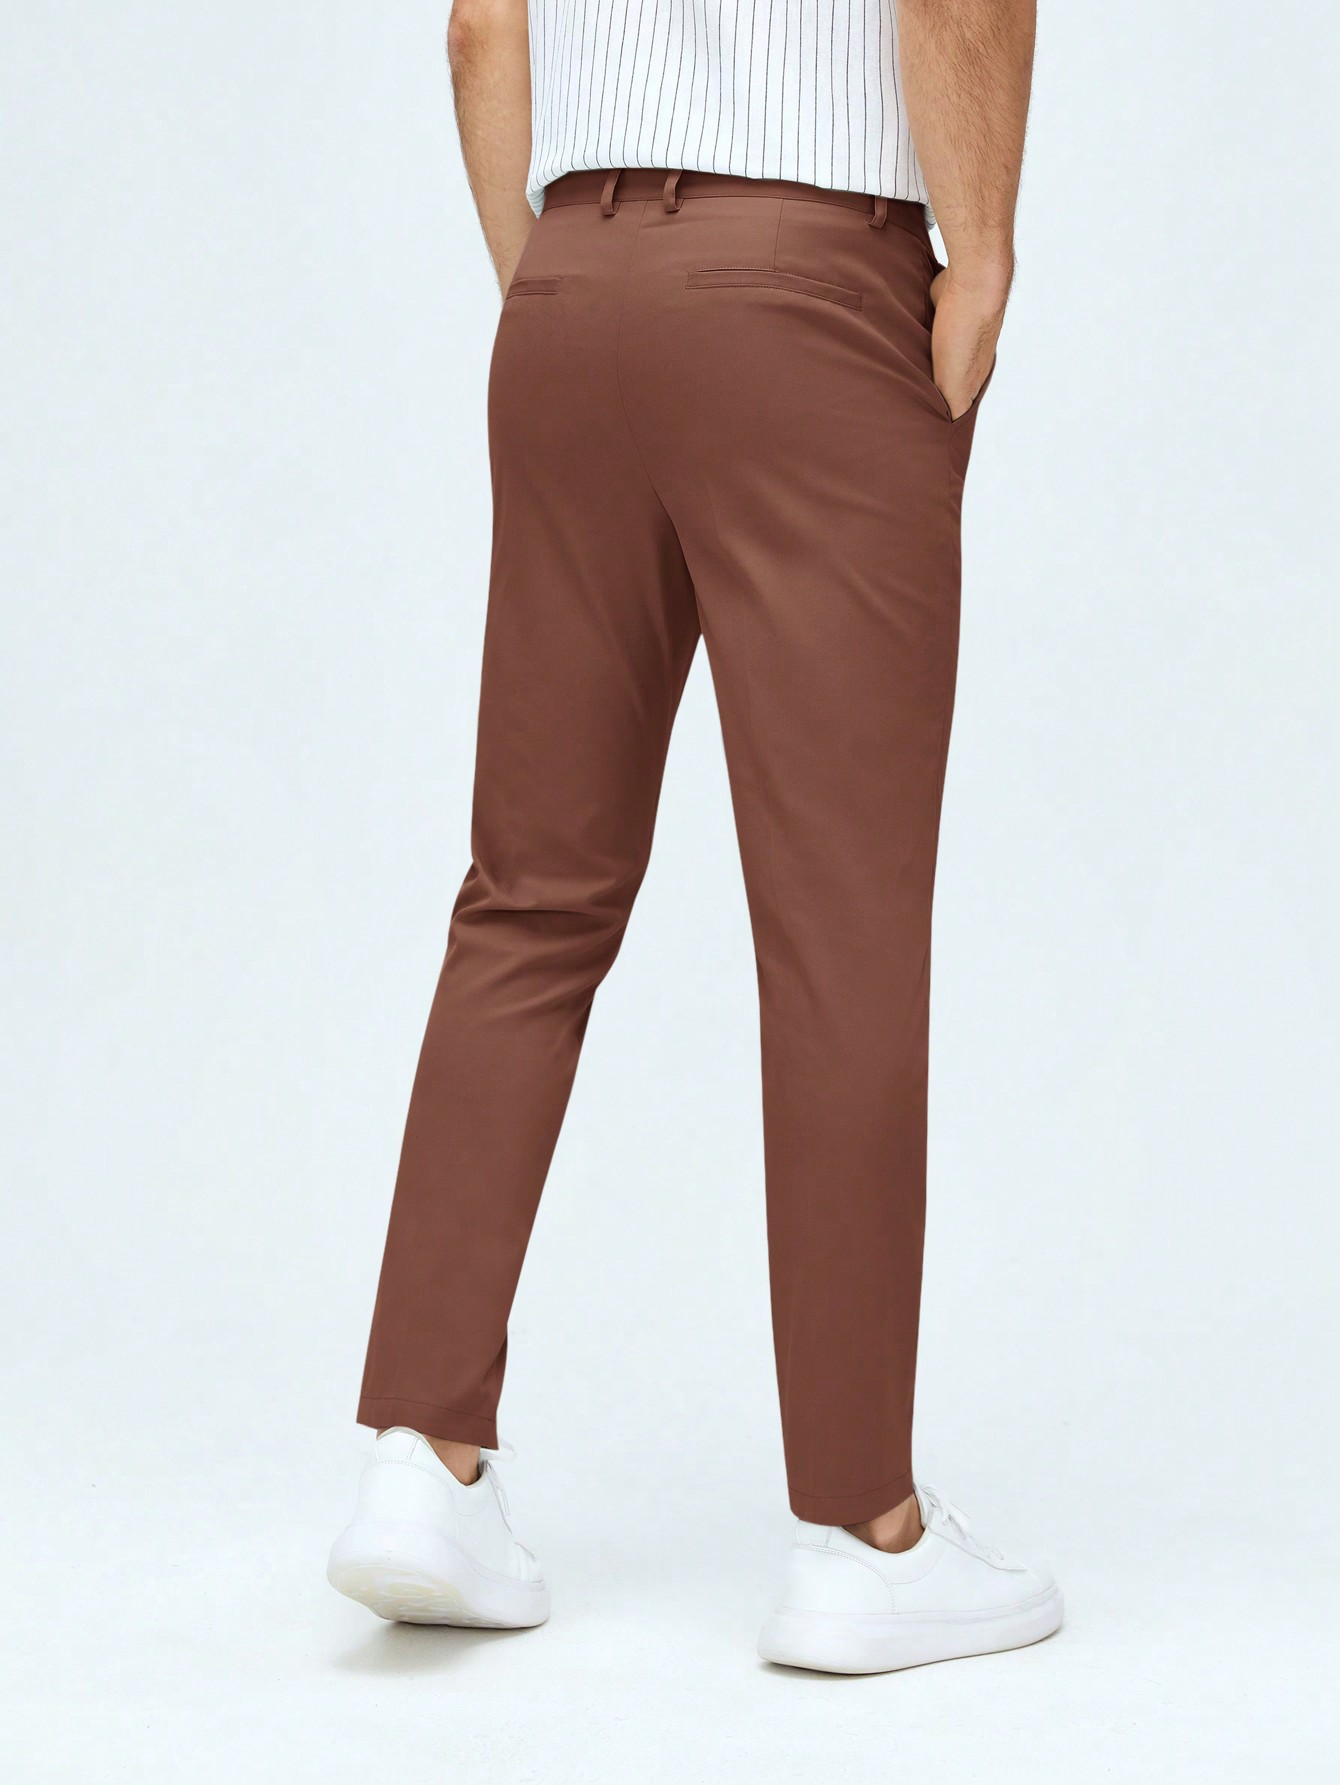 Мужские классические классические брюки из тканого материала с боковыми карманами Manfinity Mode, коричневый